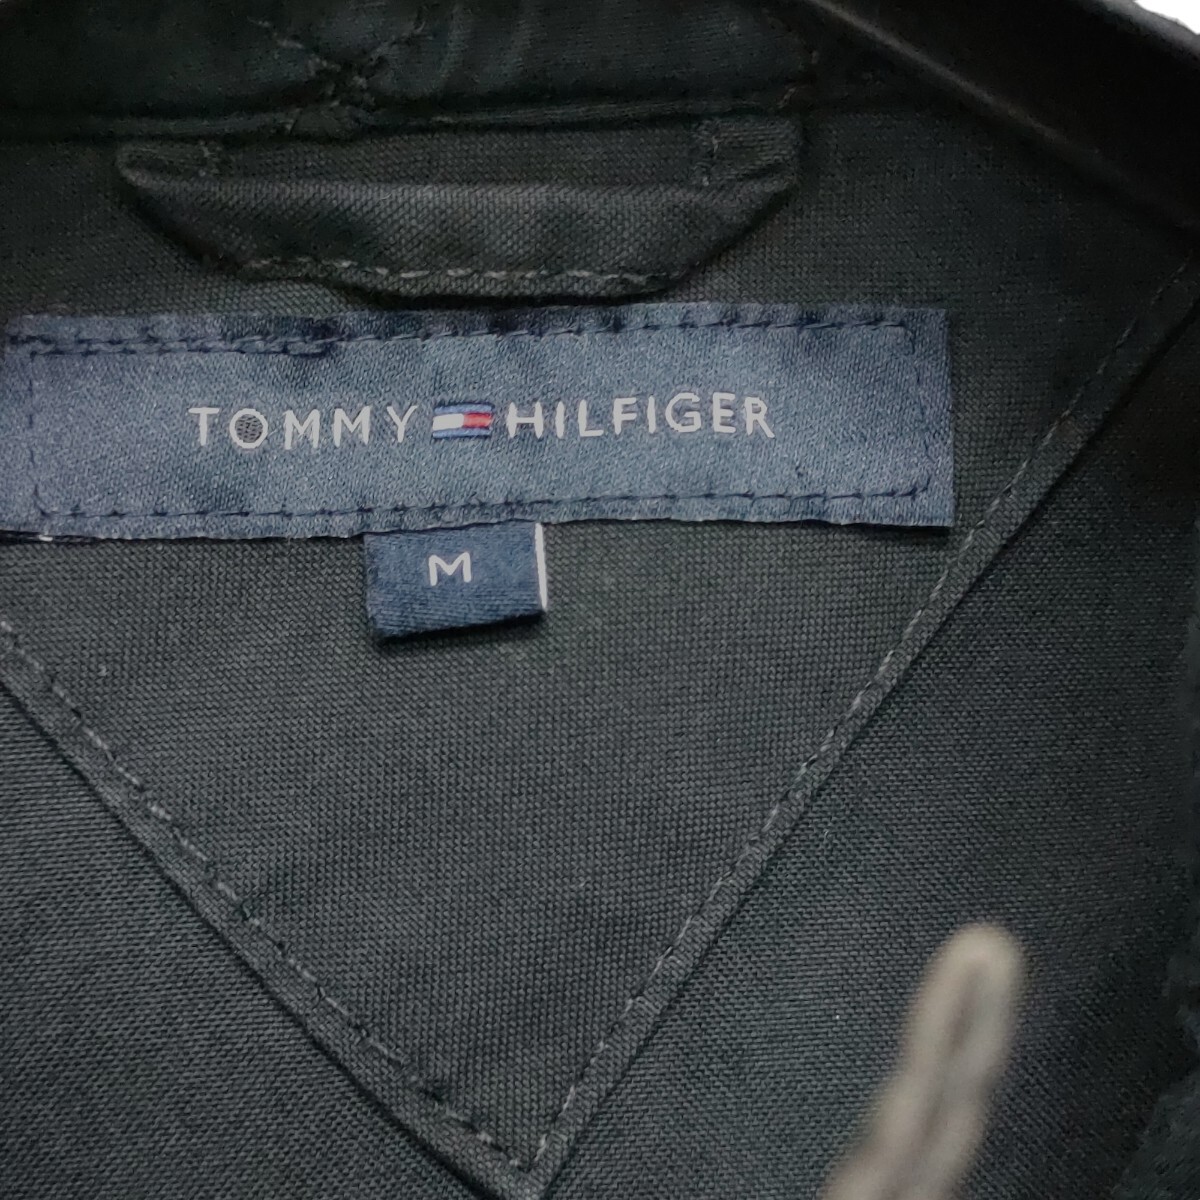 TOMMY HILFIGER NEW YORK / トミーヒルフィガー コットン ジャケット 春ジャケット ブラック Mサイズ フード収納 a-1256_画像3